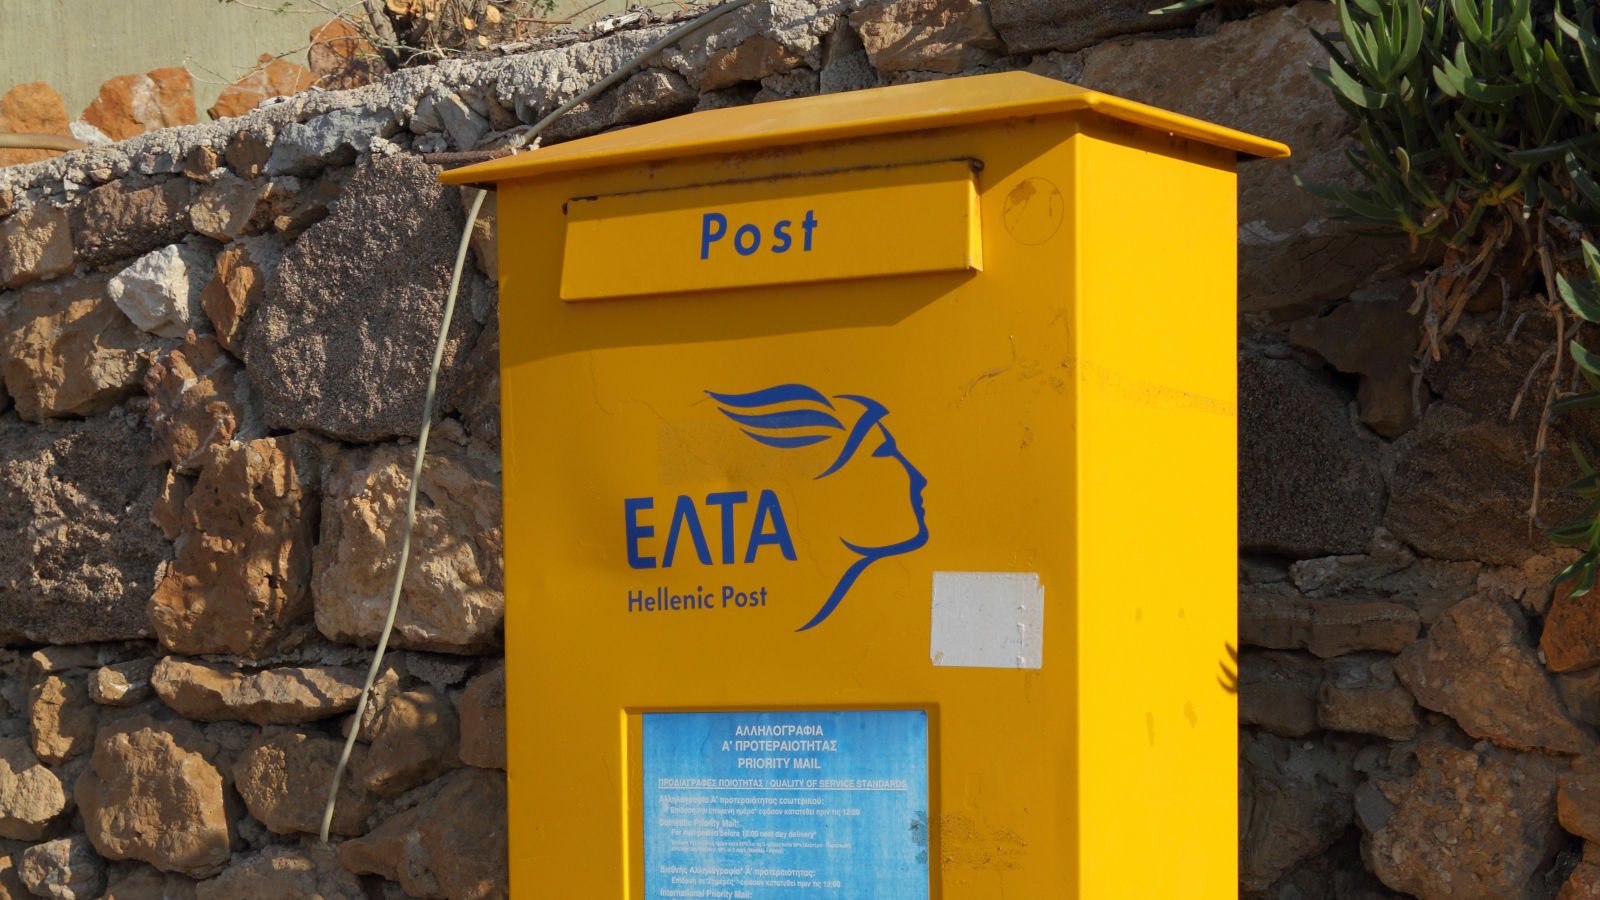 Yunanistan’ın kamu posta hizmeti fidye yazılımı saldırısı nedeniyle çevrimdışı